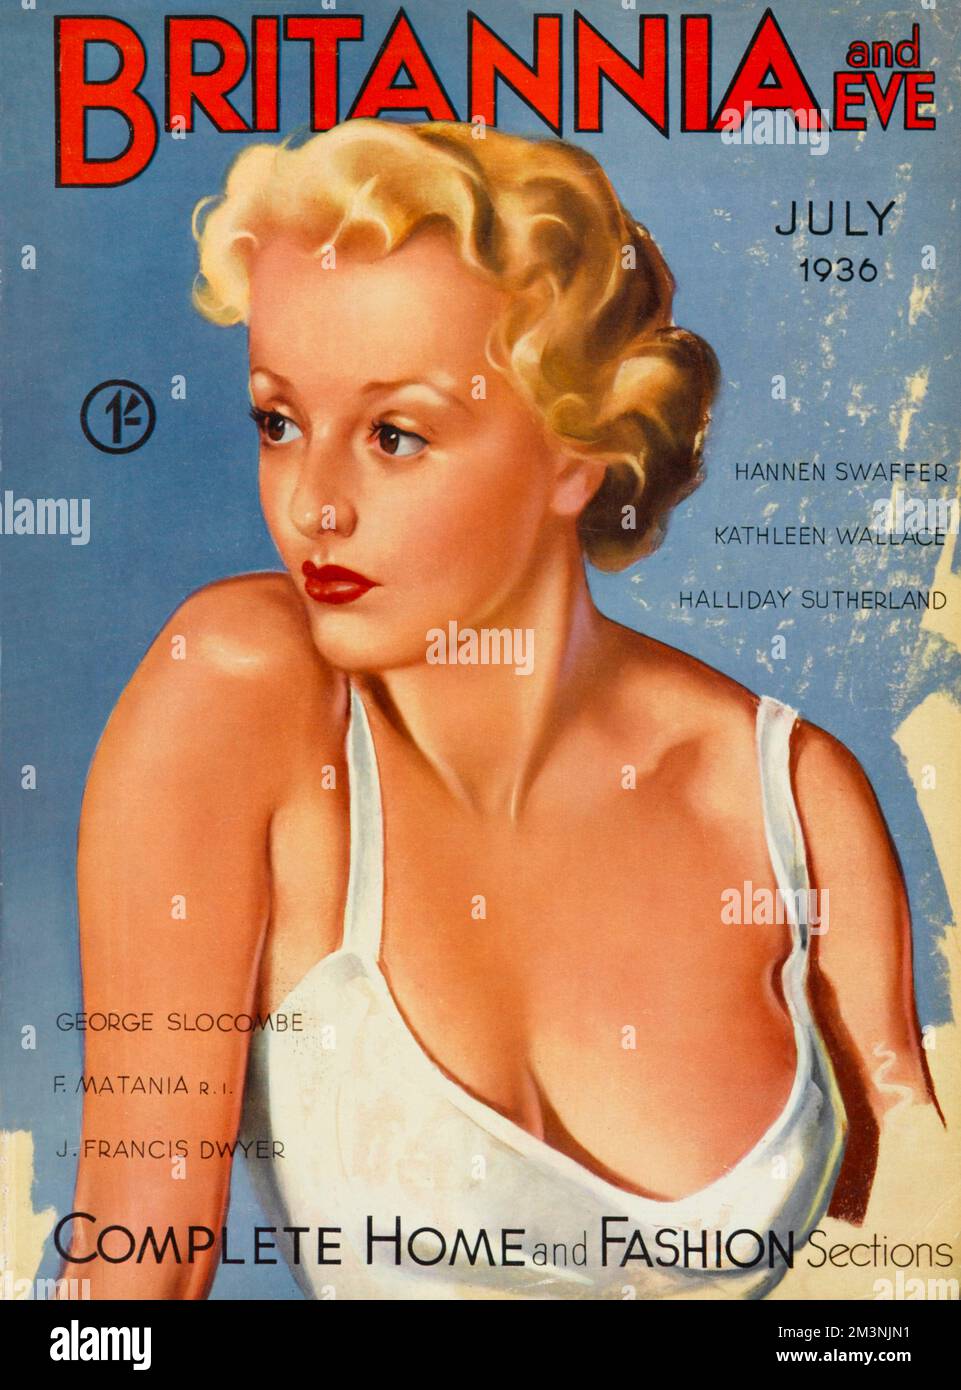 Illustration de la couverture avec une bombe blonde à gaine effrayante, dangereusement proche de se révéler encore plus loin. Date: 1936 Banque D'Images